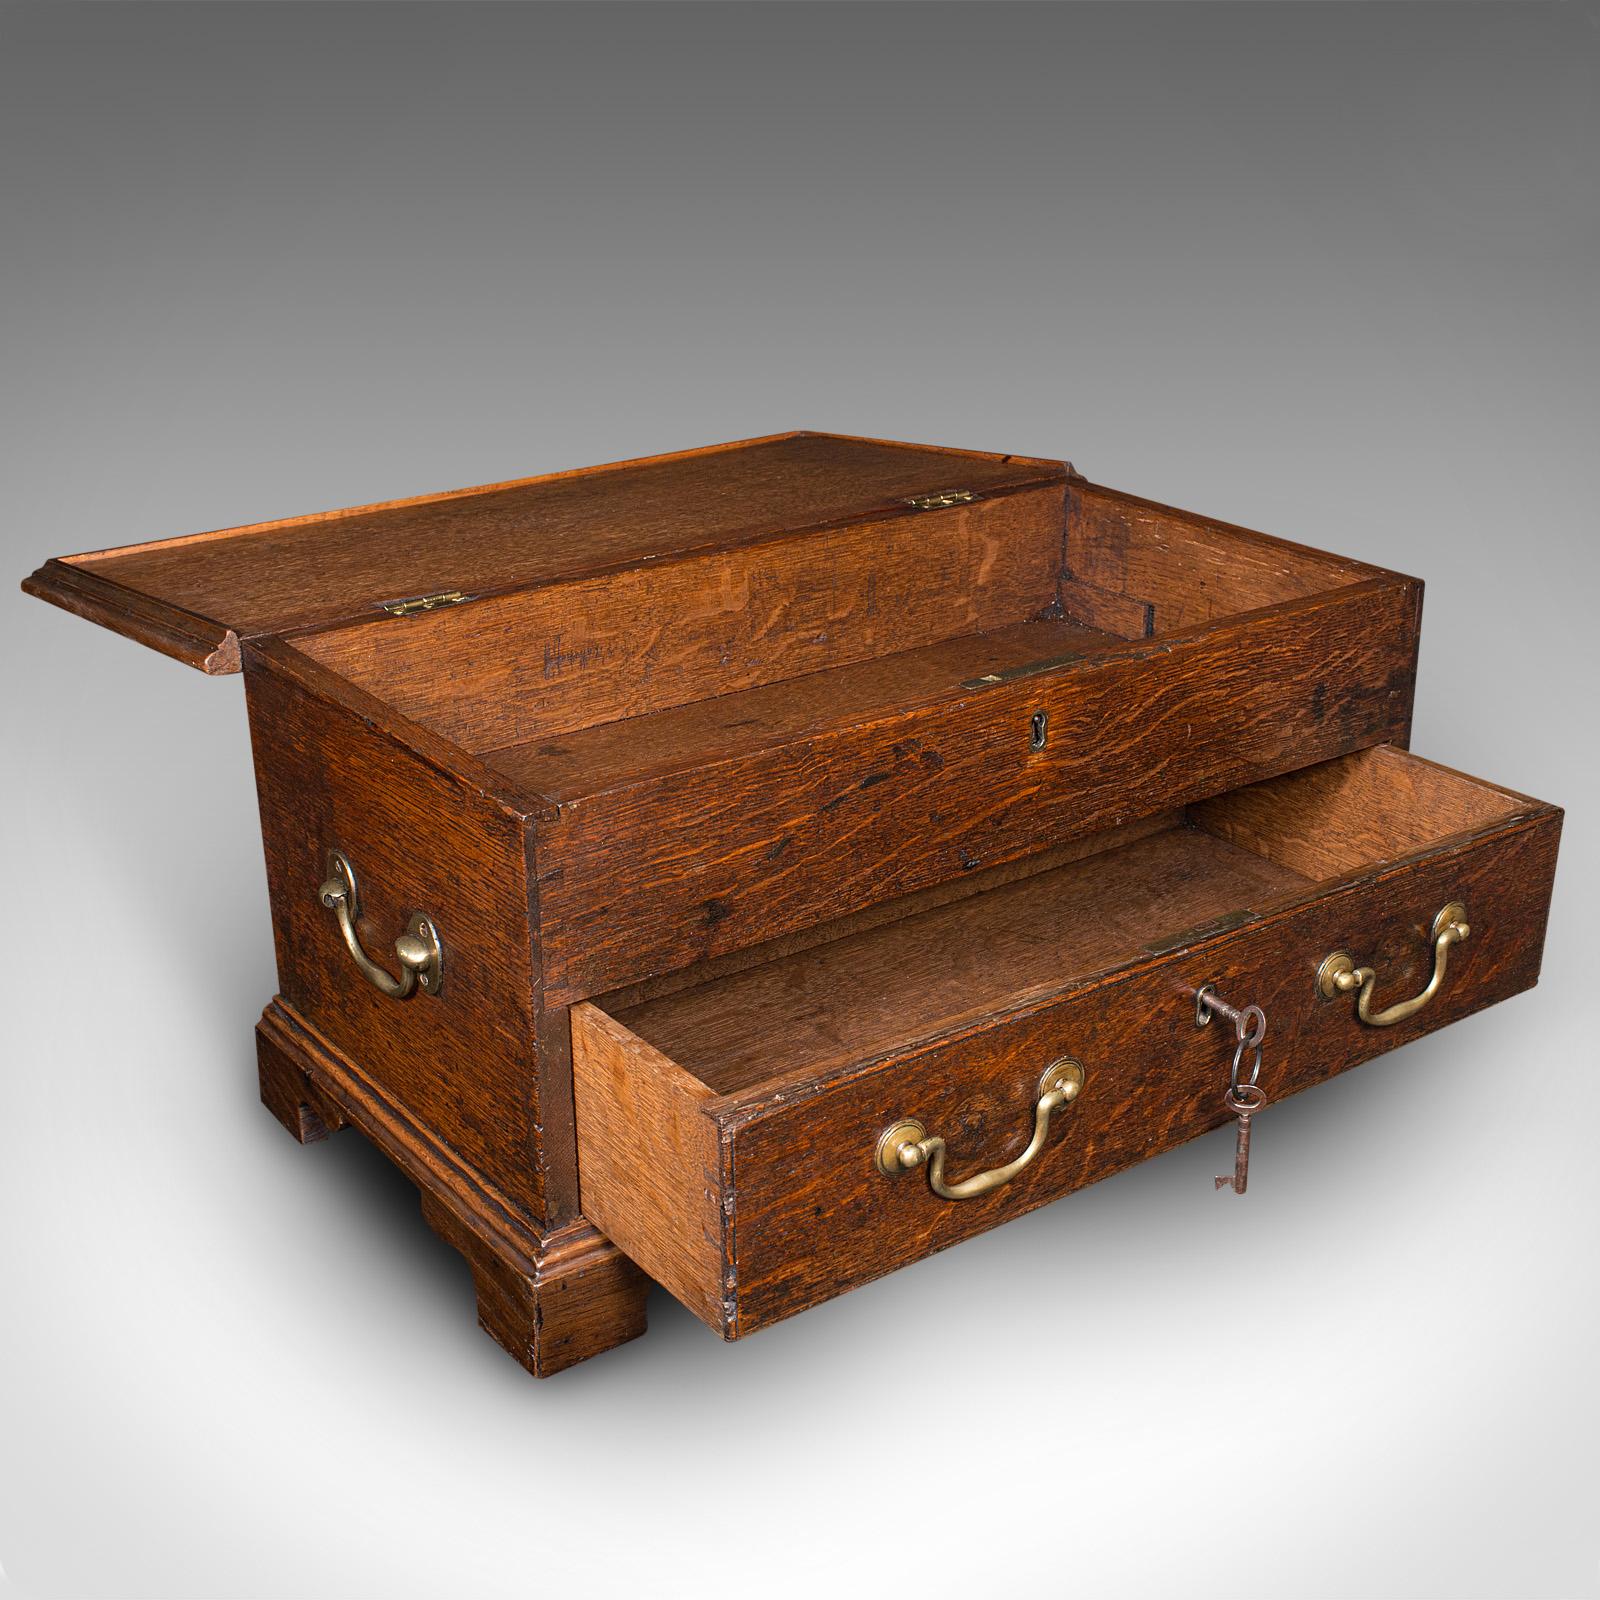 Dies ist eine antike Maultiertruhe für Lehrlinge. Eine englische Miniatur-Schreibtischschatulle aus Eichenholz aus der späten georgianischen Periode, um 1800.

Wunderschöne Aufbewahrungsbox für den Schreibtisch, ein tolles Beispiel für ein